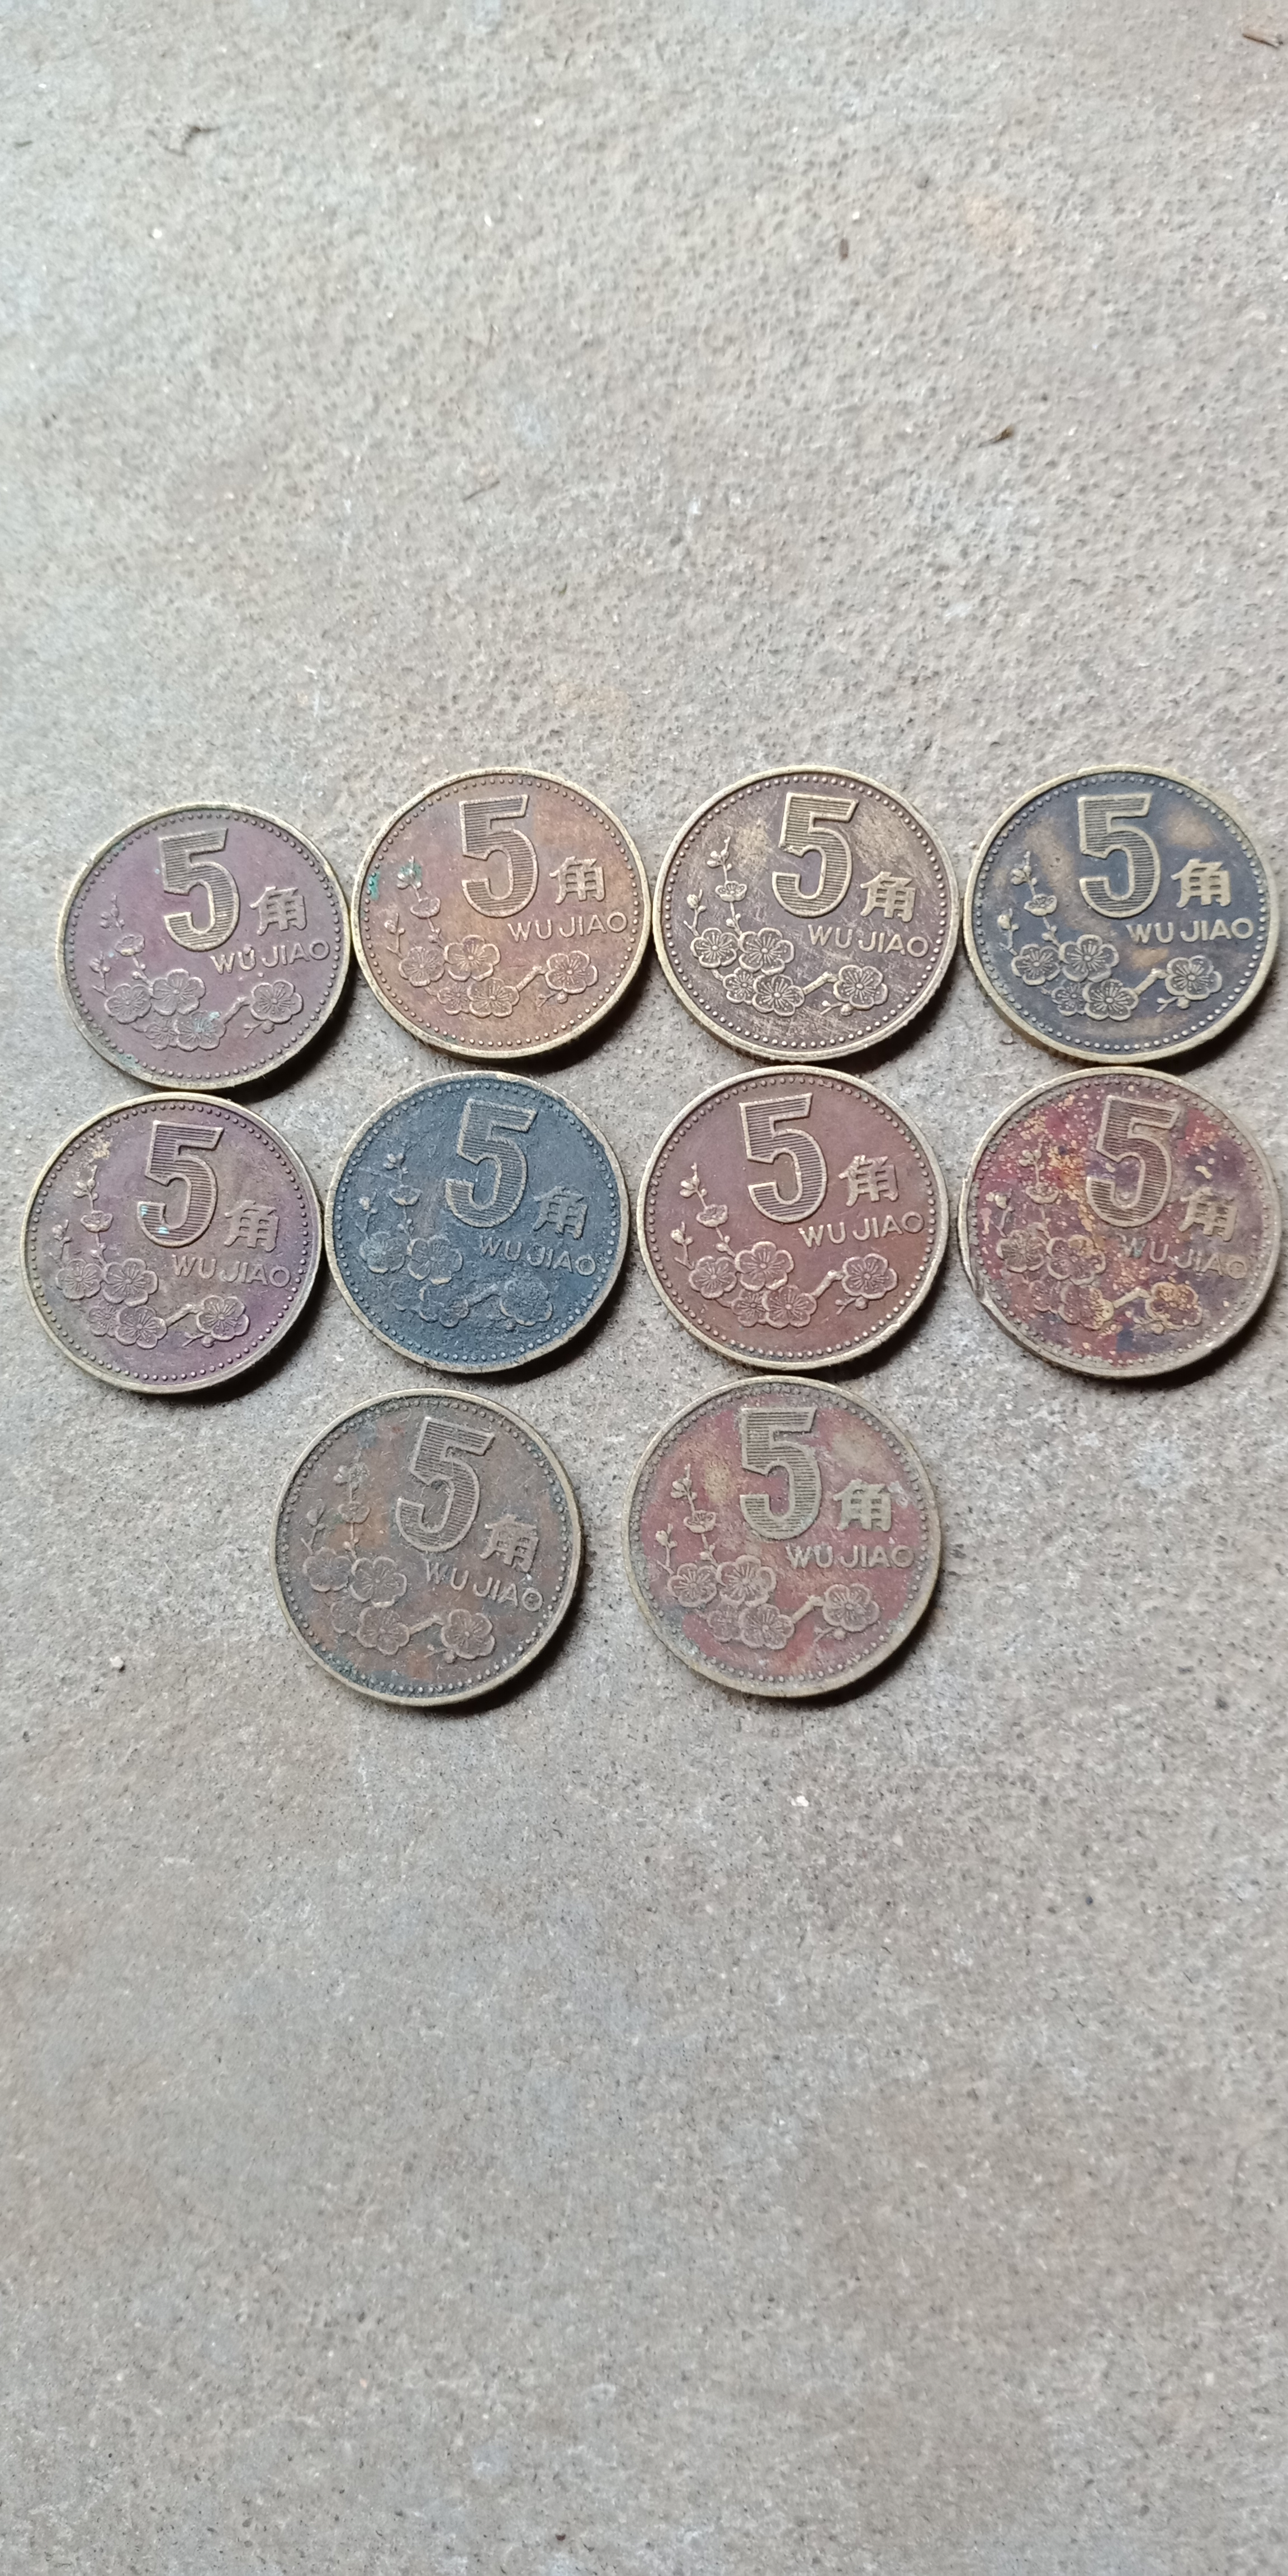 爱藏网 爱藏拍卖 硬币 分享到: 梅花五角包浆币,10枚起拍,自然包浆